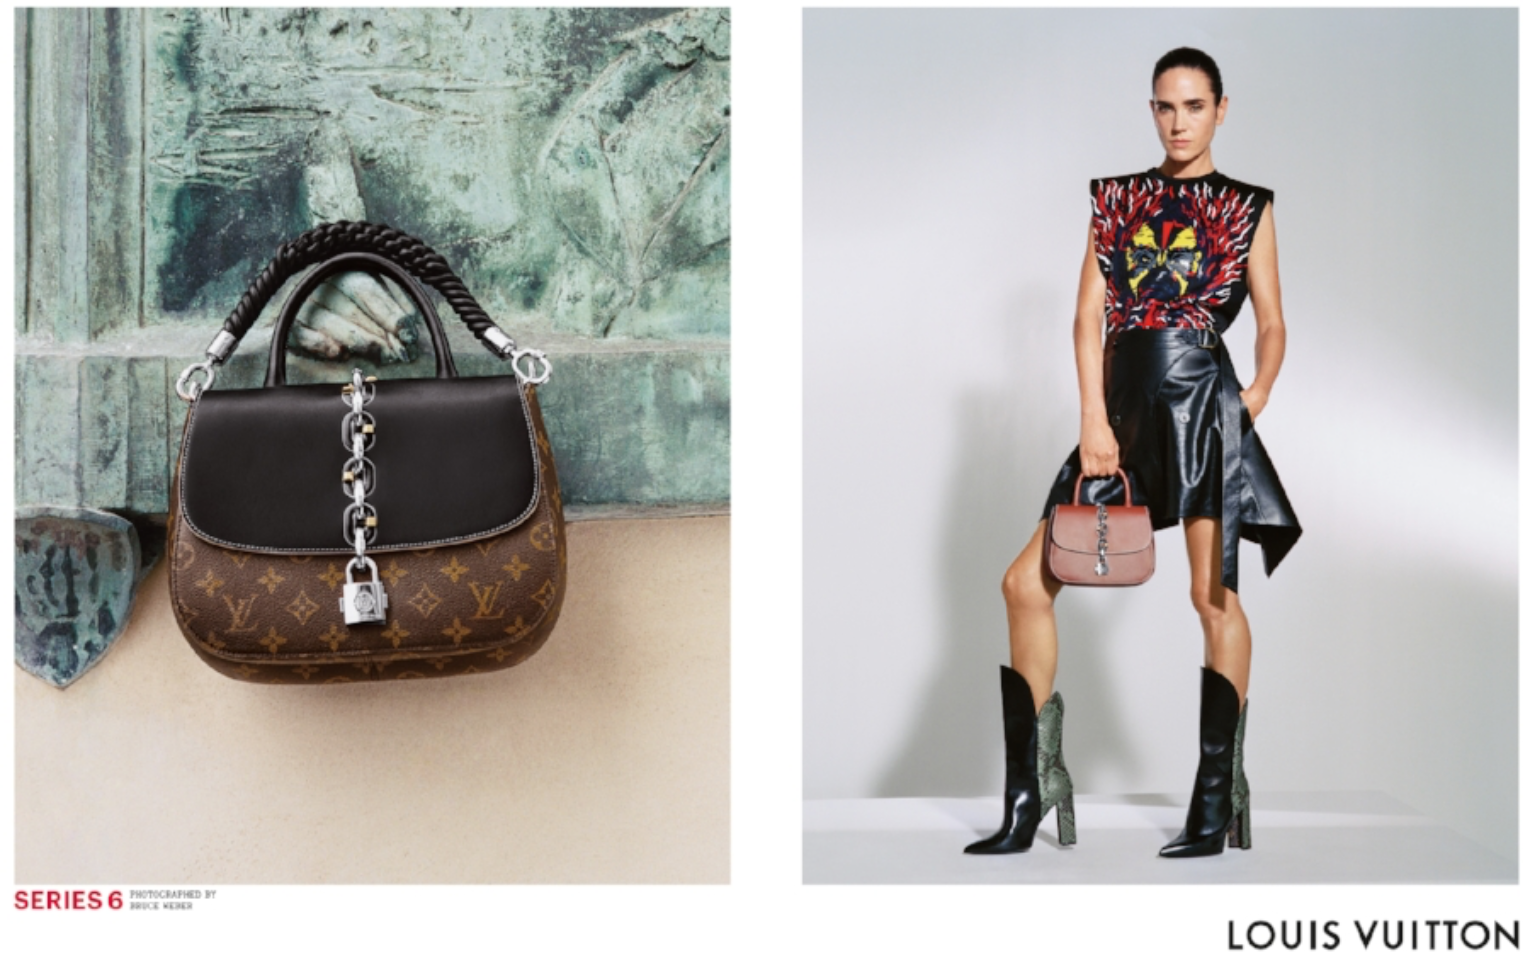 spansk jage Jeg har erkendt det Louis Vuitton Files Suit Against Canadian Flea Market For Selling Fake  Goods - The Fashion Law